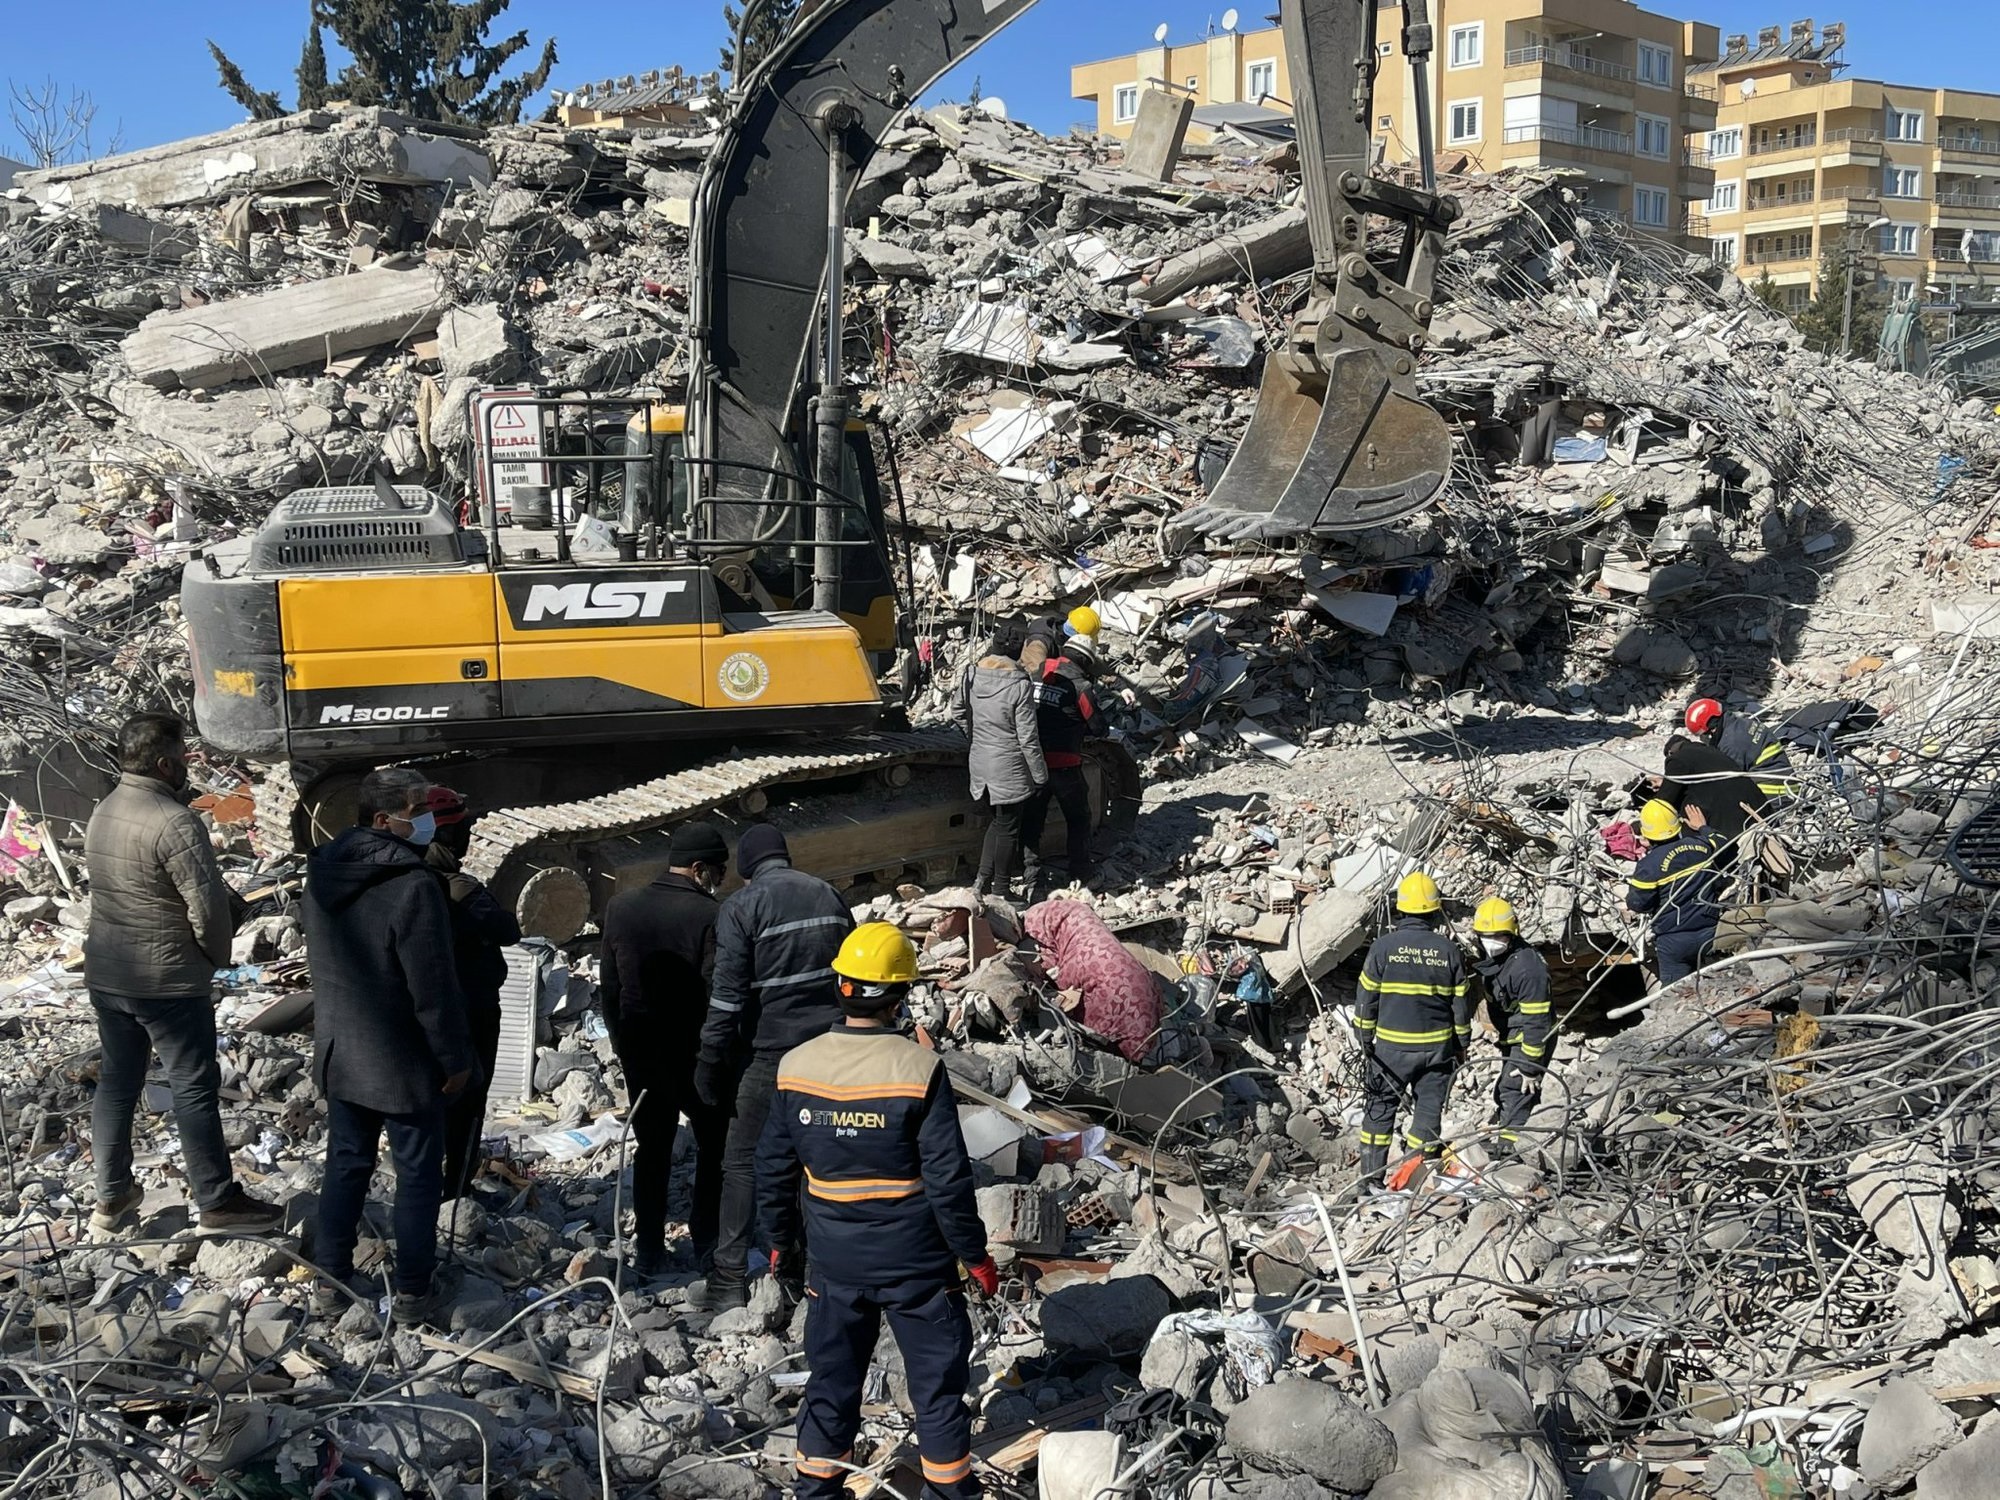 Tâm sự của đại úy công an tại hiện trường thảm họa động đất ở Thổ Nhĩ Kỳ - Ảnh 1